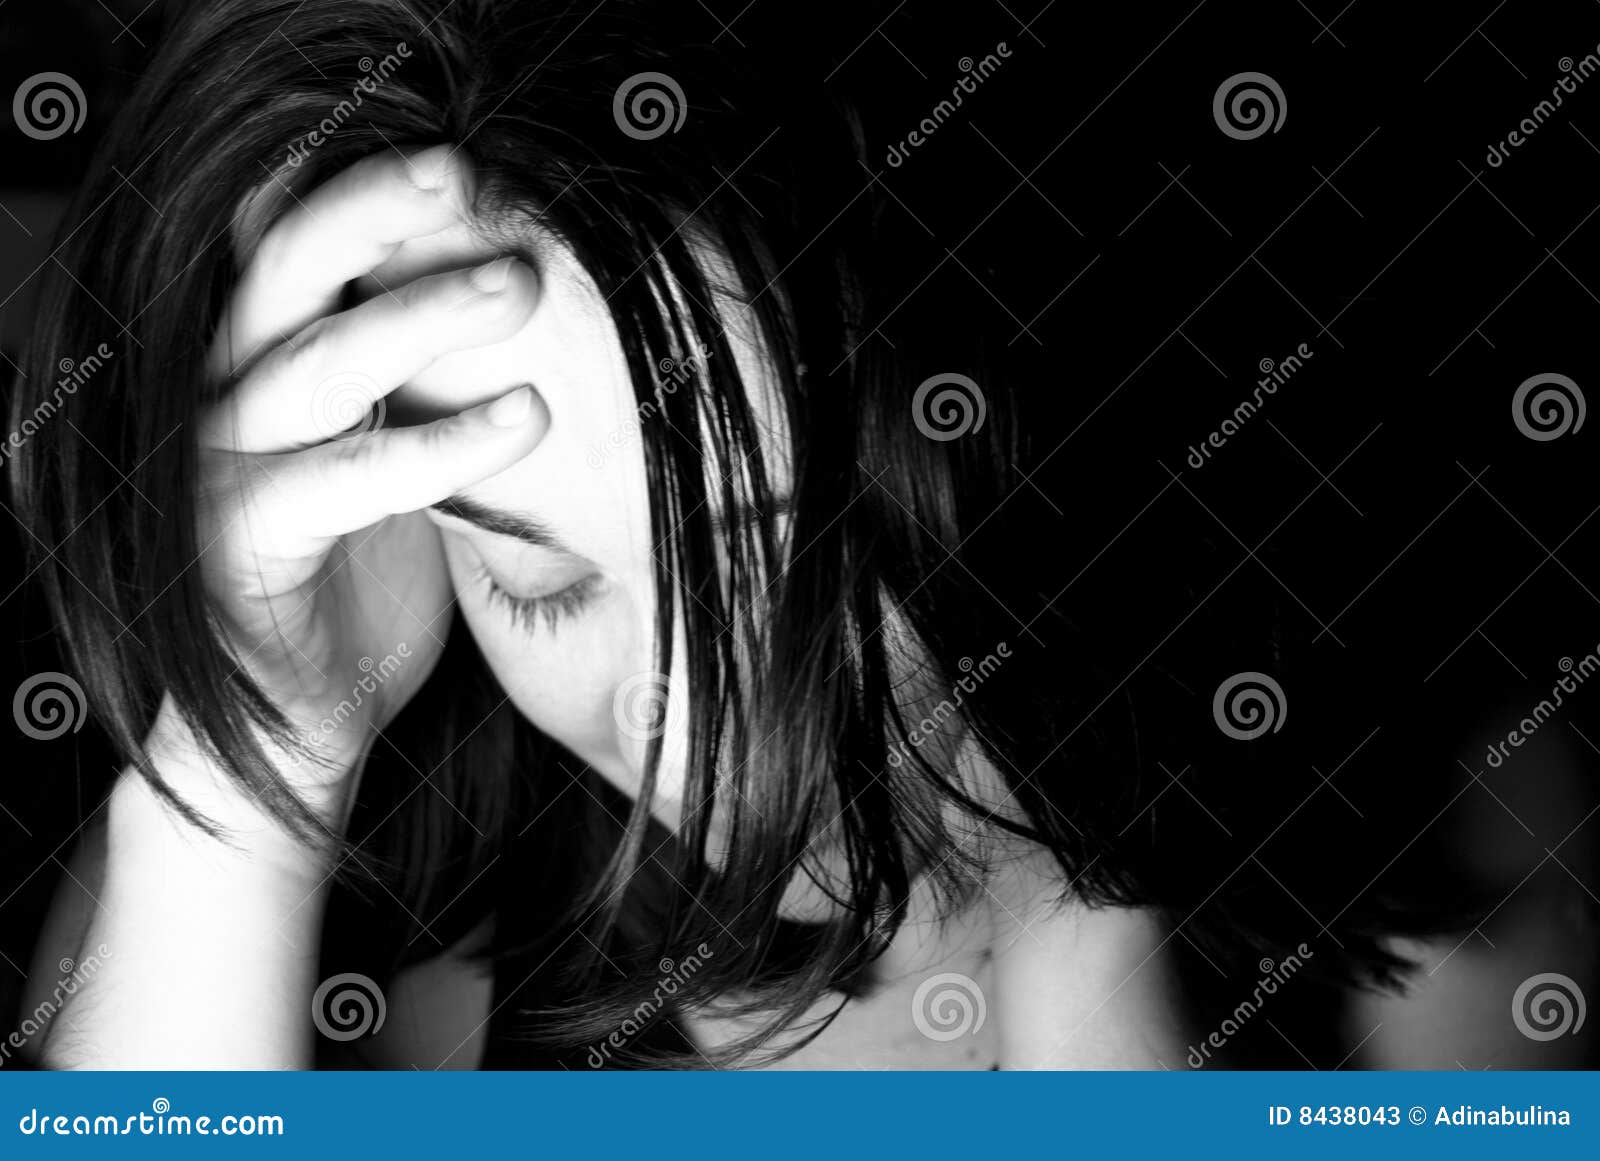 Mulher Triste Com Queda Cara Perfil Menina Deprimida Ilustração Vetorial  imagem vetorial de tomozina1.yandex.ru© 446099278